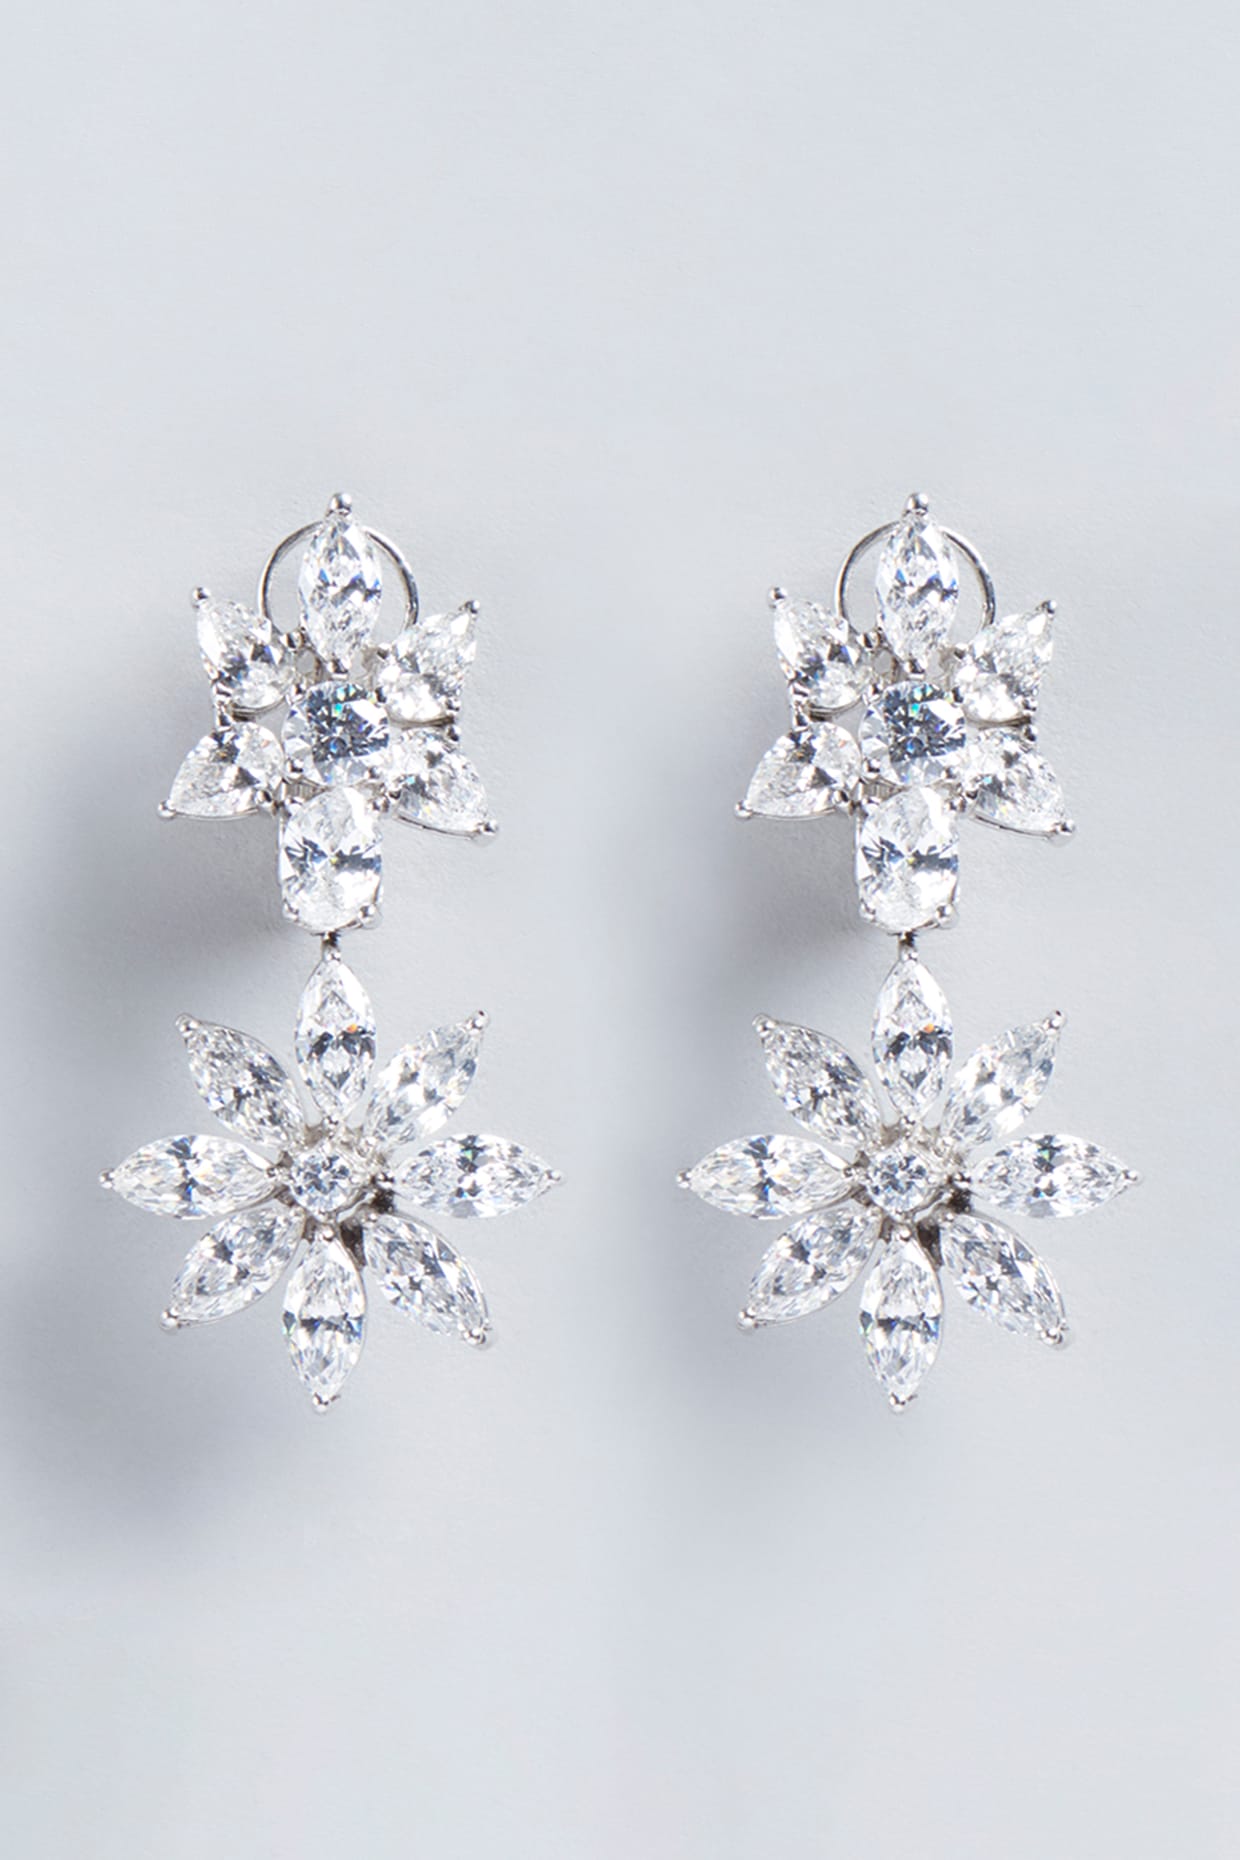 Dusty Blue Wedding Earrings, Stud Bridal Teardrop Crystal Earrings, Dusty  Blue Wedding Jewelry Swarovski CZ Zirconia Posts Dangle Earrings - Etsy